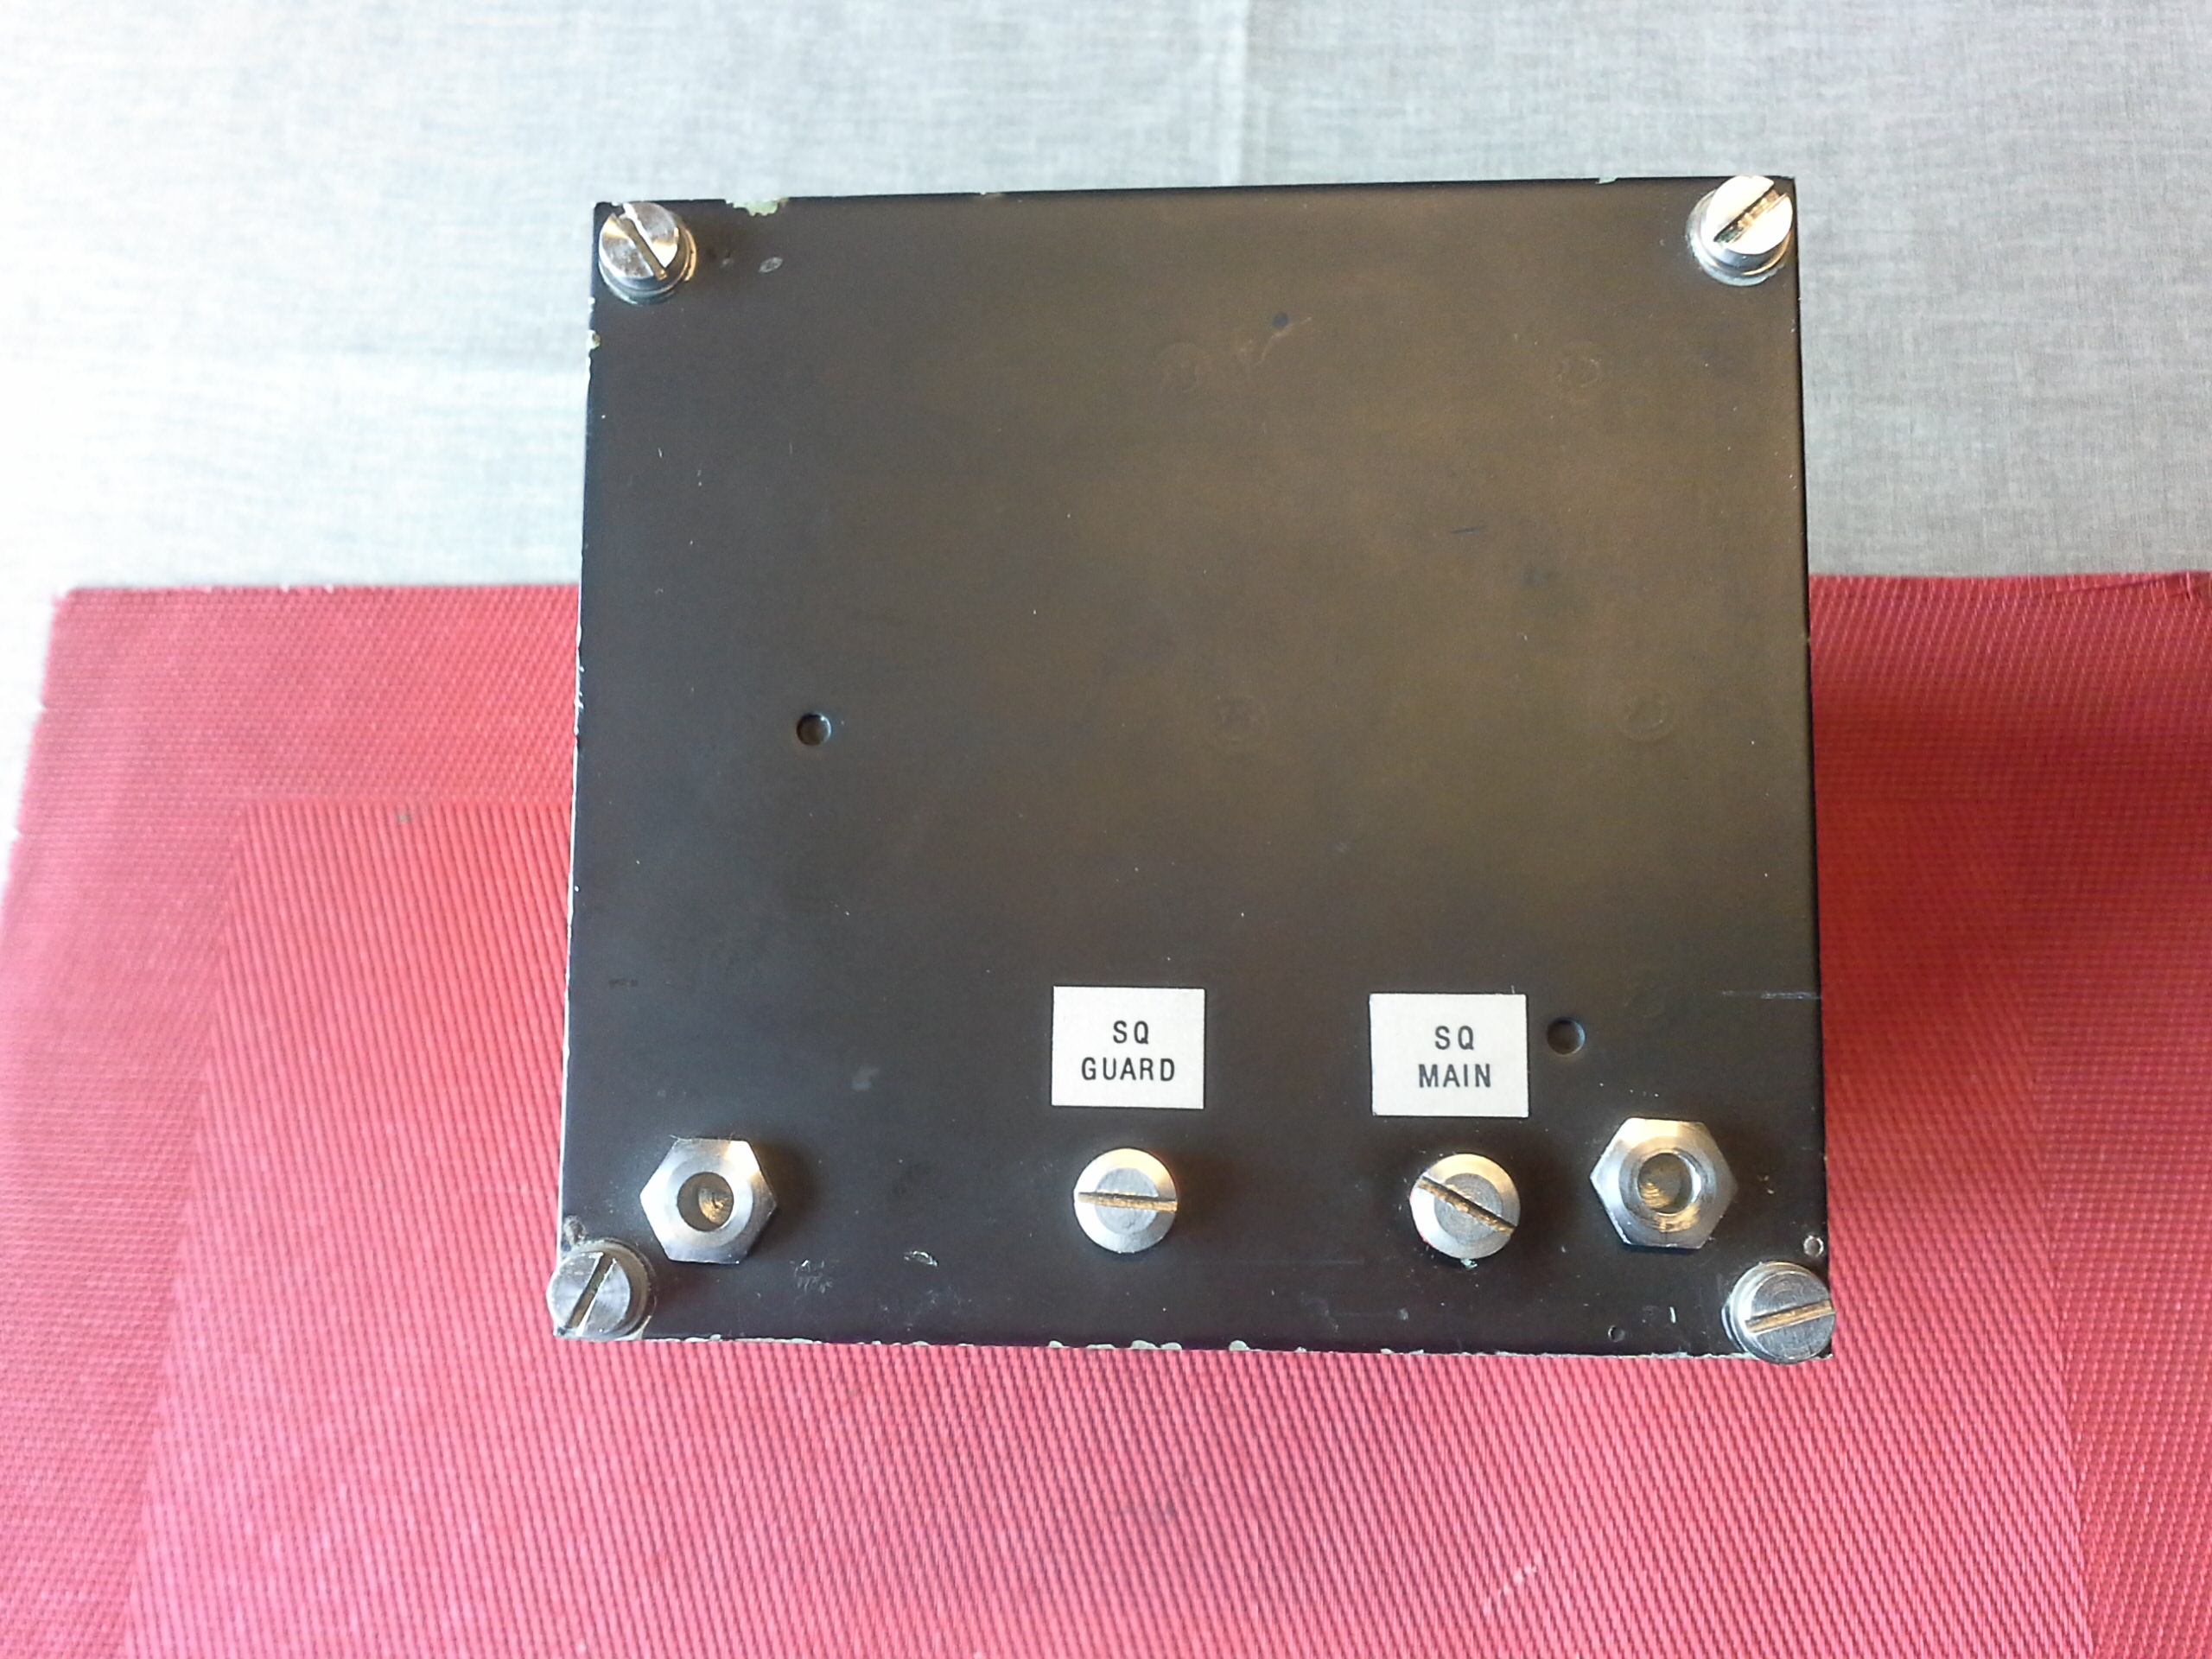 Rohde & Schwarz UHF-Transceiver XD 611H1, gehört zu Rohde & Schwarz Sende/ Empfangsanlage XD 611S2 UHF